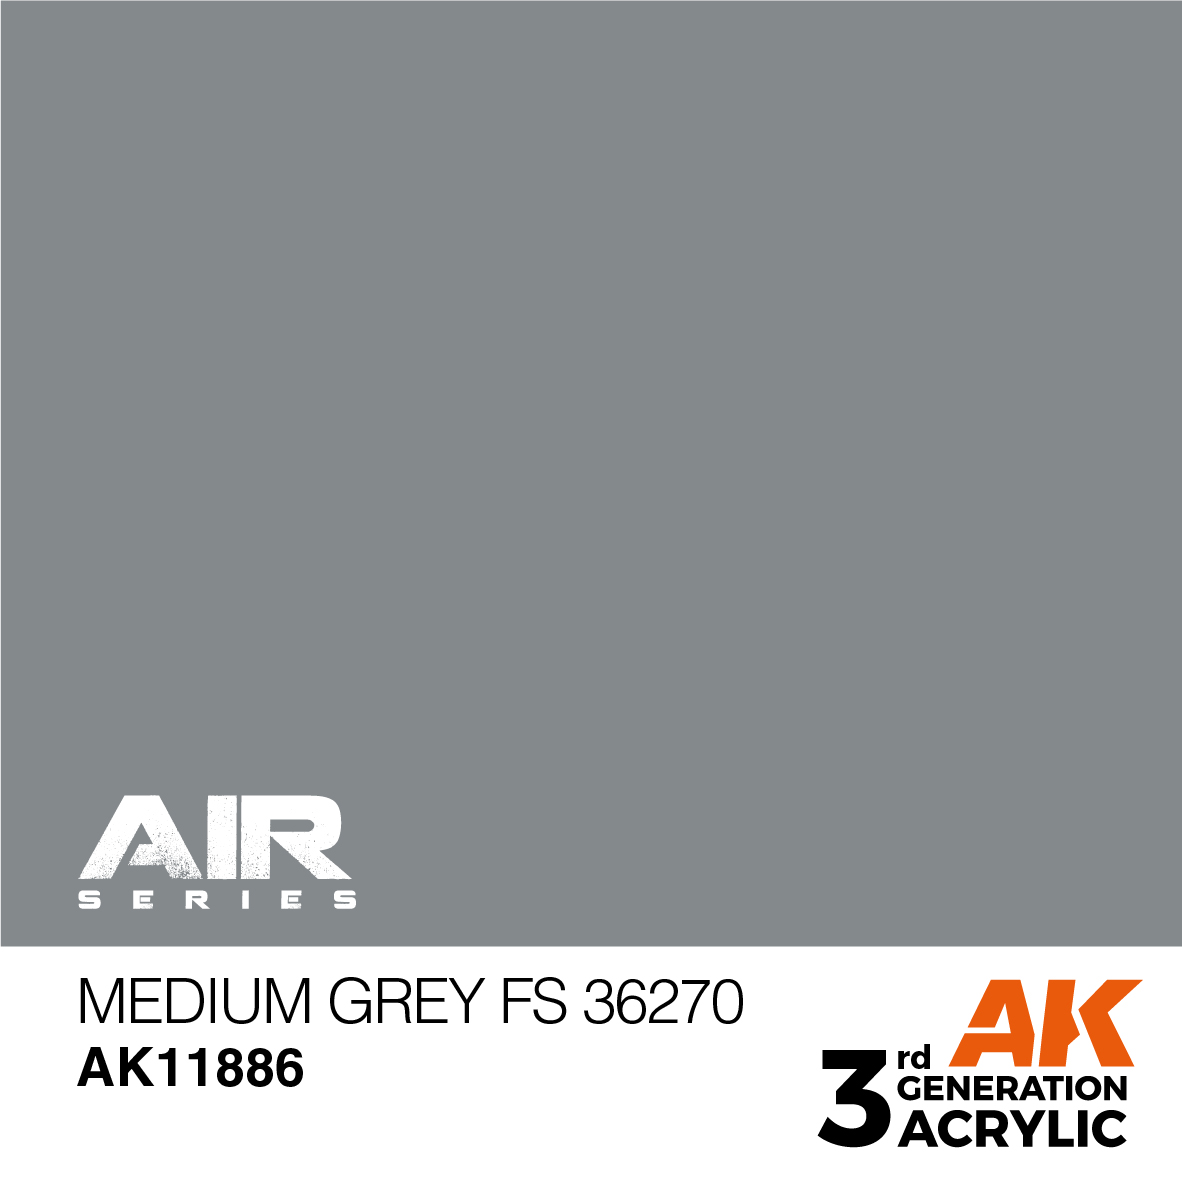 Medium Grey FS 36270 – AIR